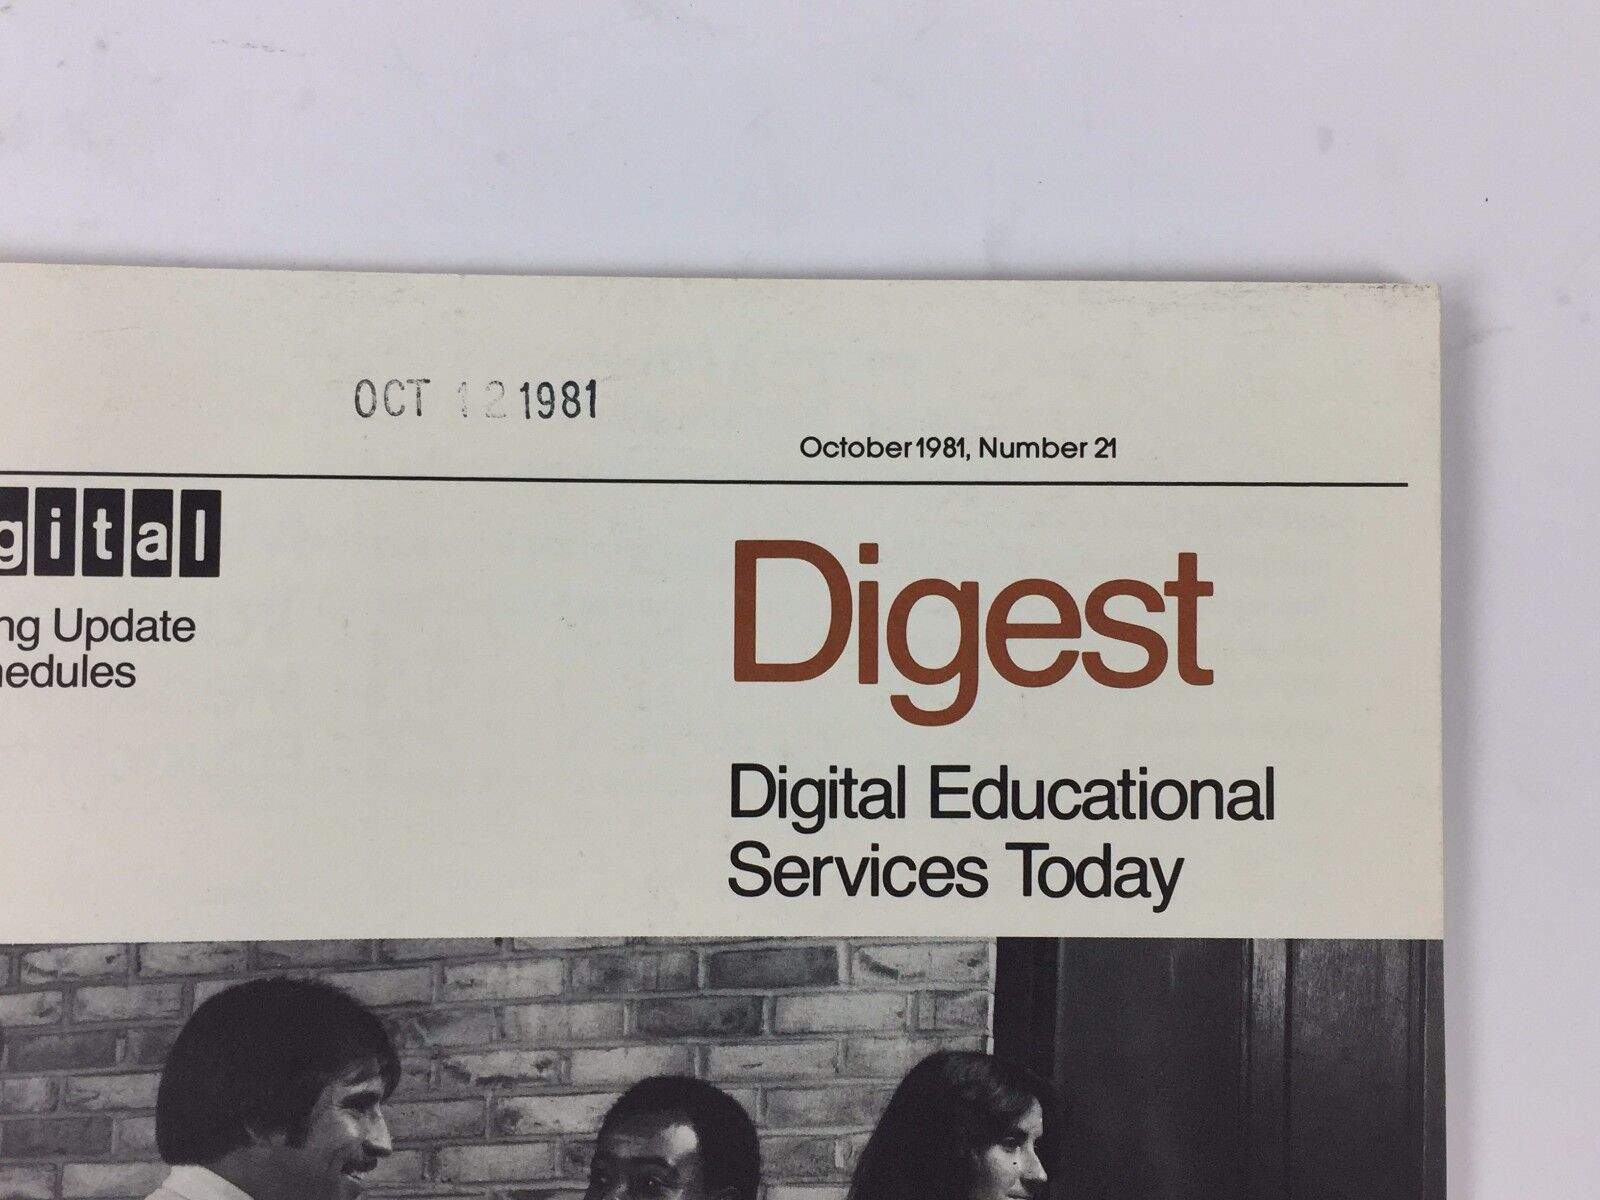 Digital Digest Magazine October 1981, Number 21